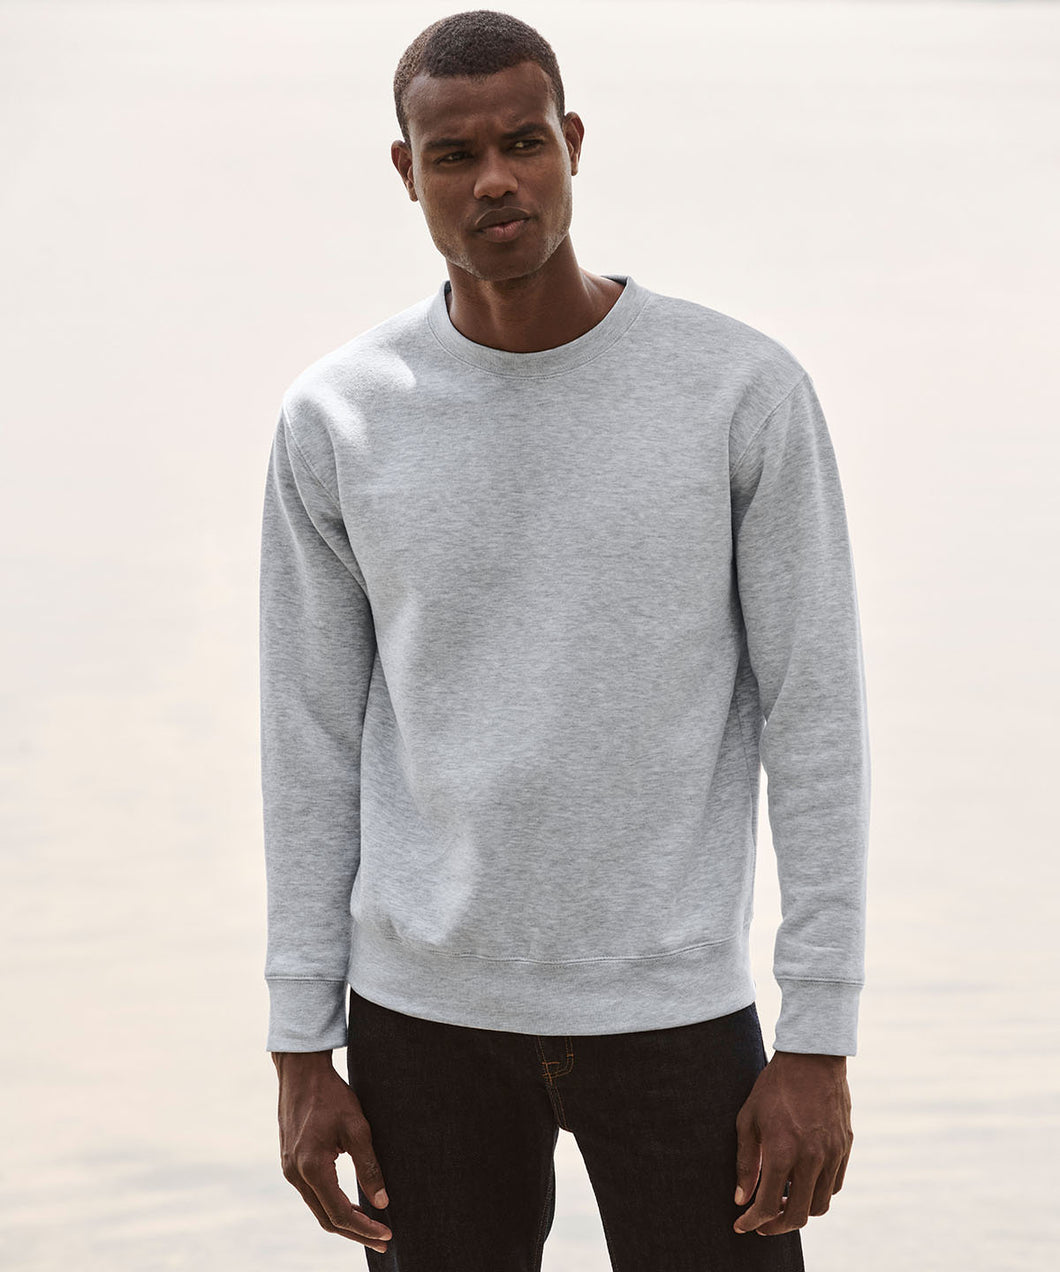 Embroidered - Premium set-in sweatshirt